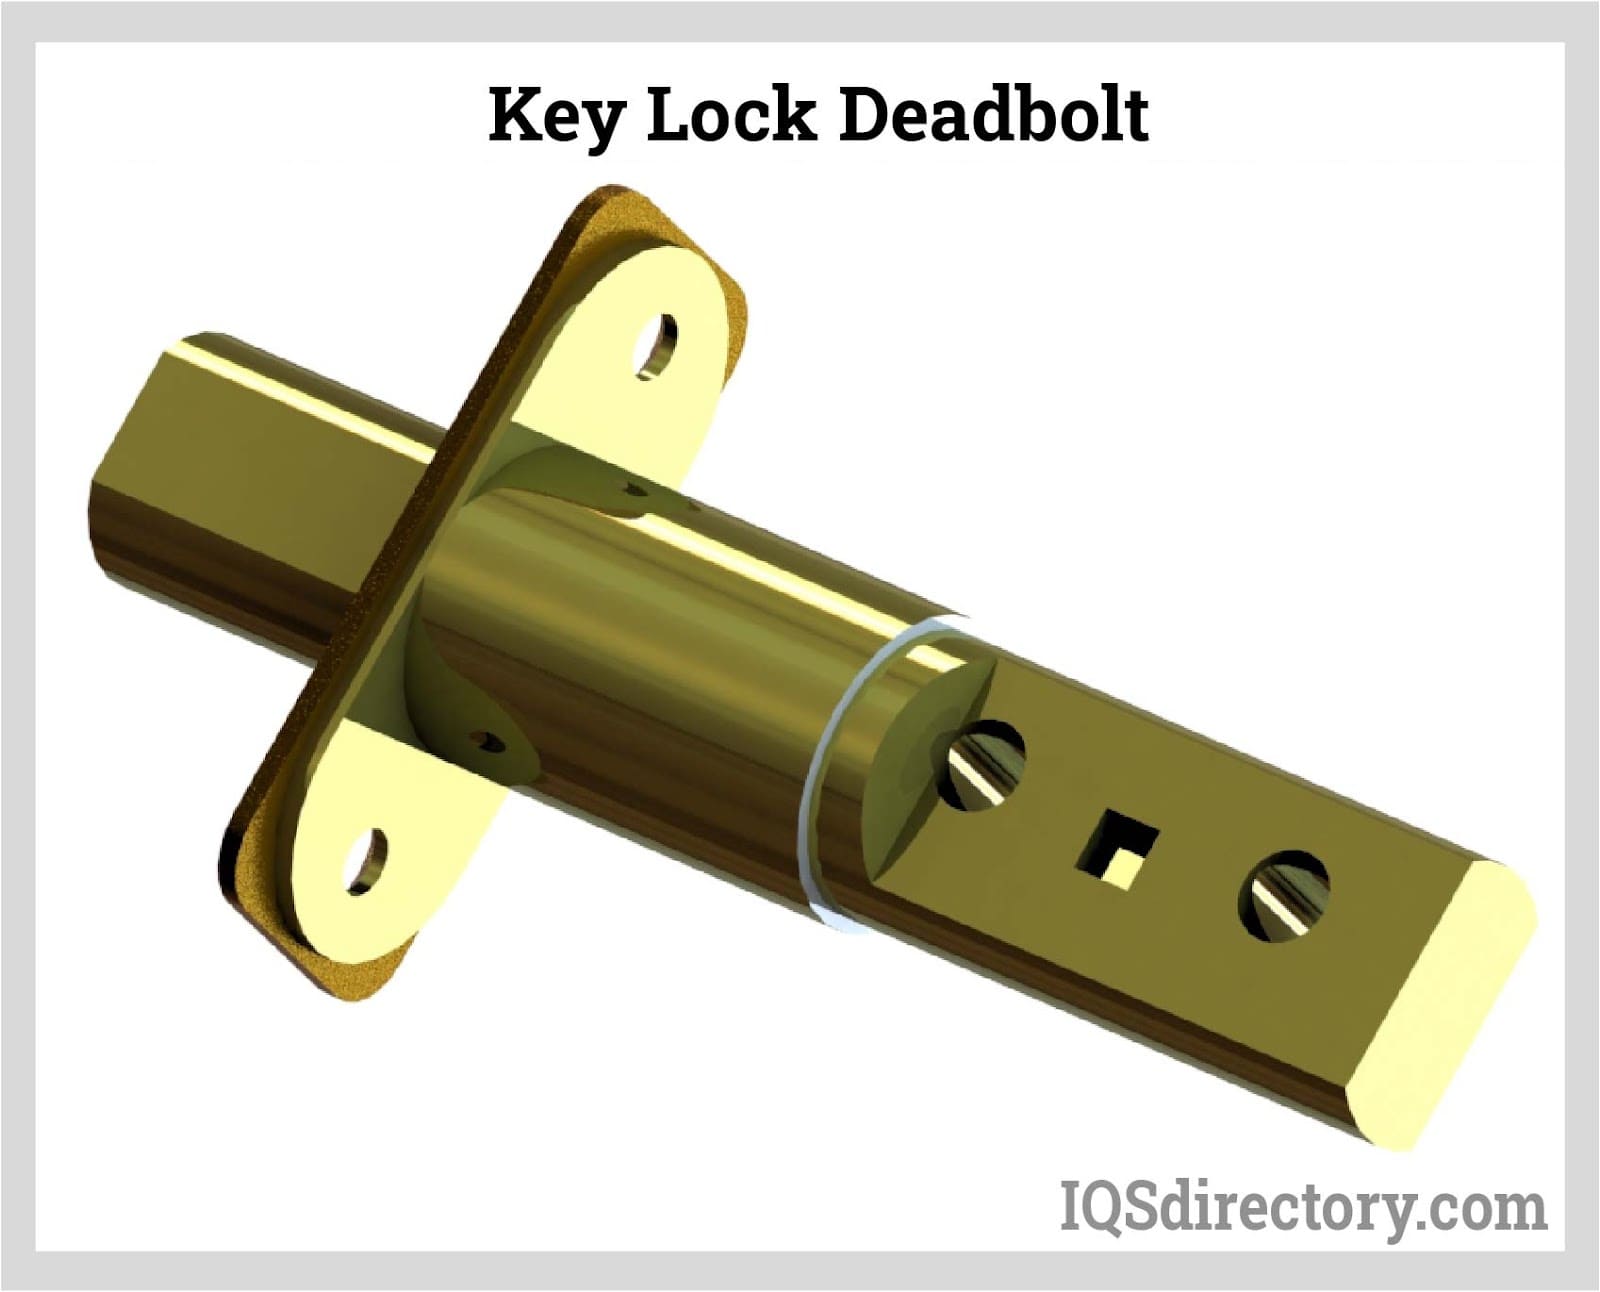 Key Lock Deadbolt